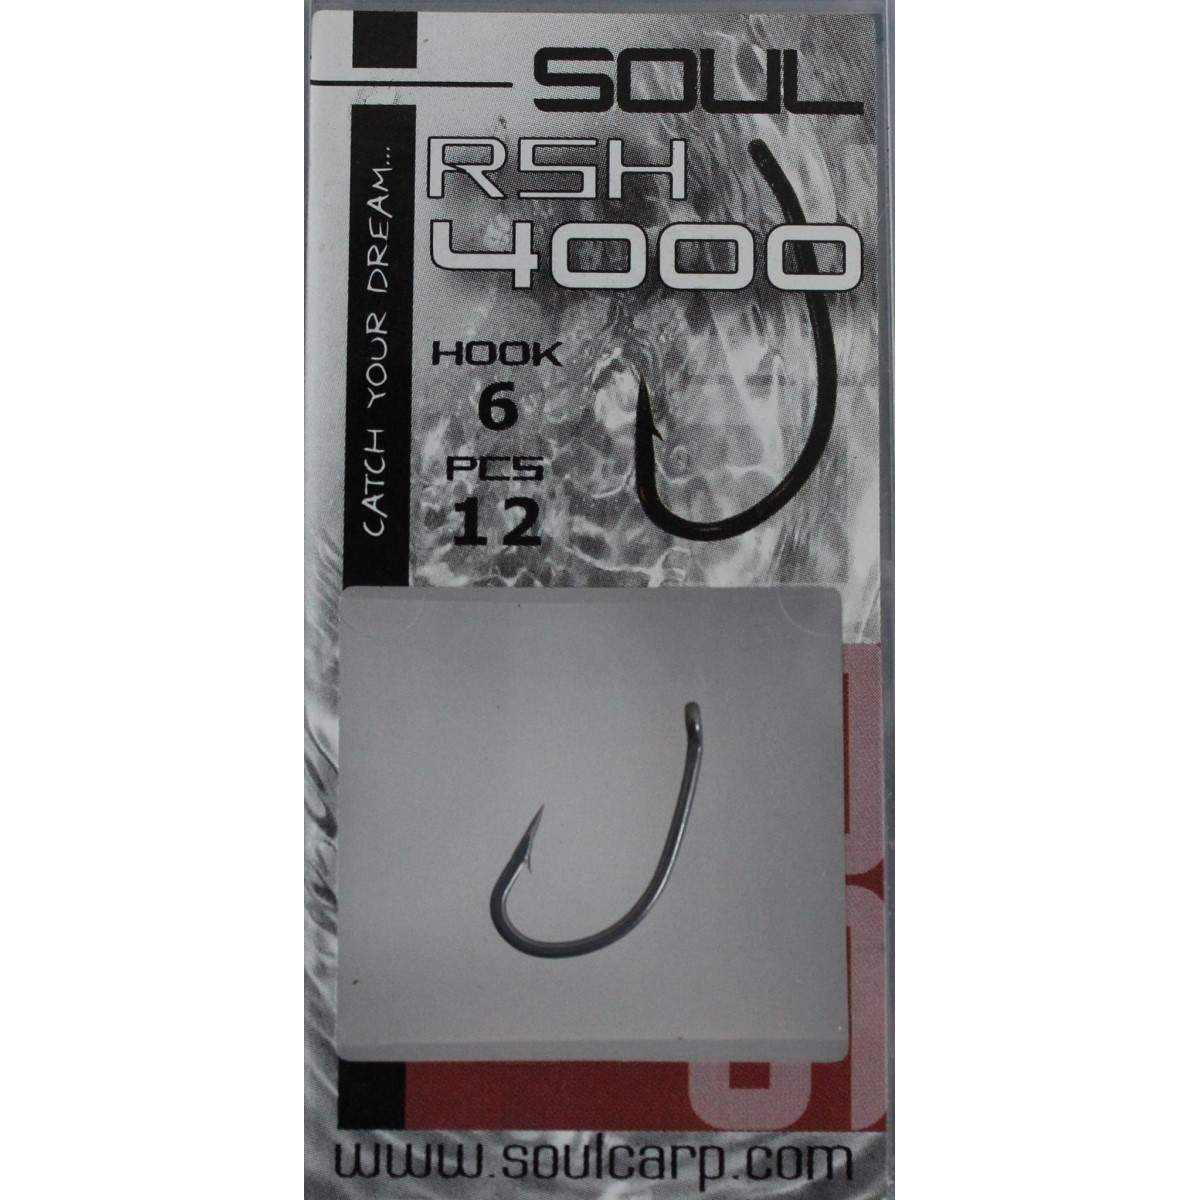 Soul RSH 4000